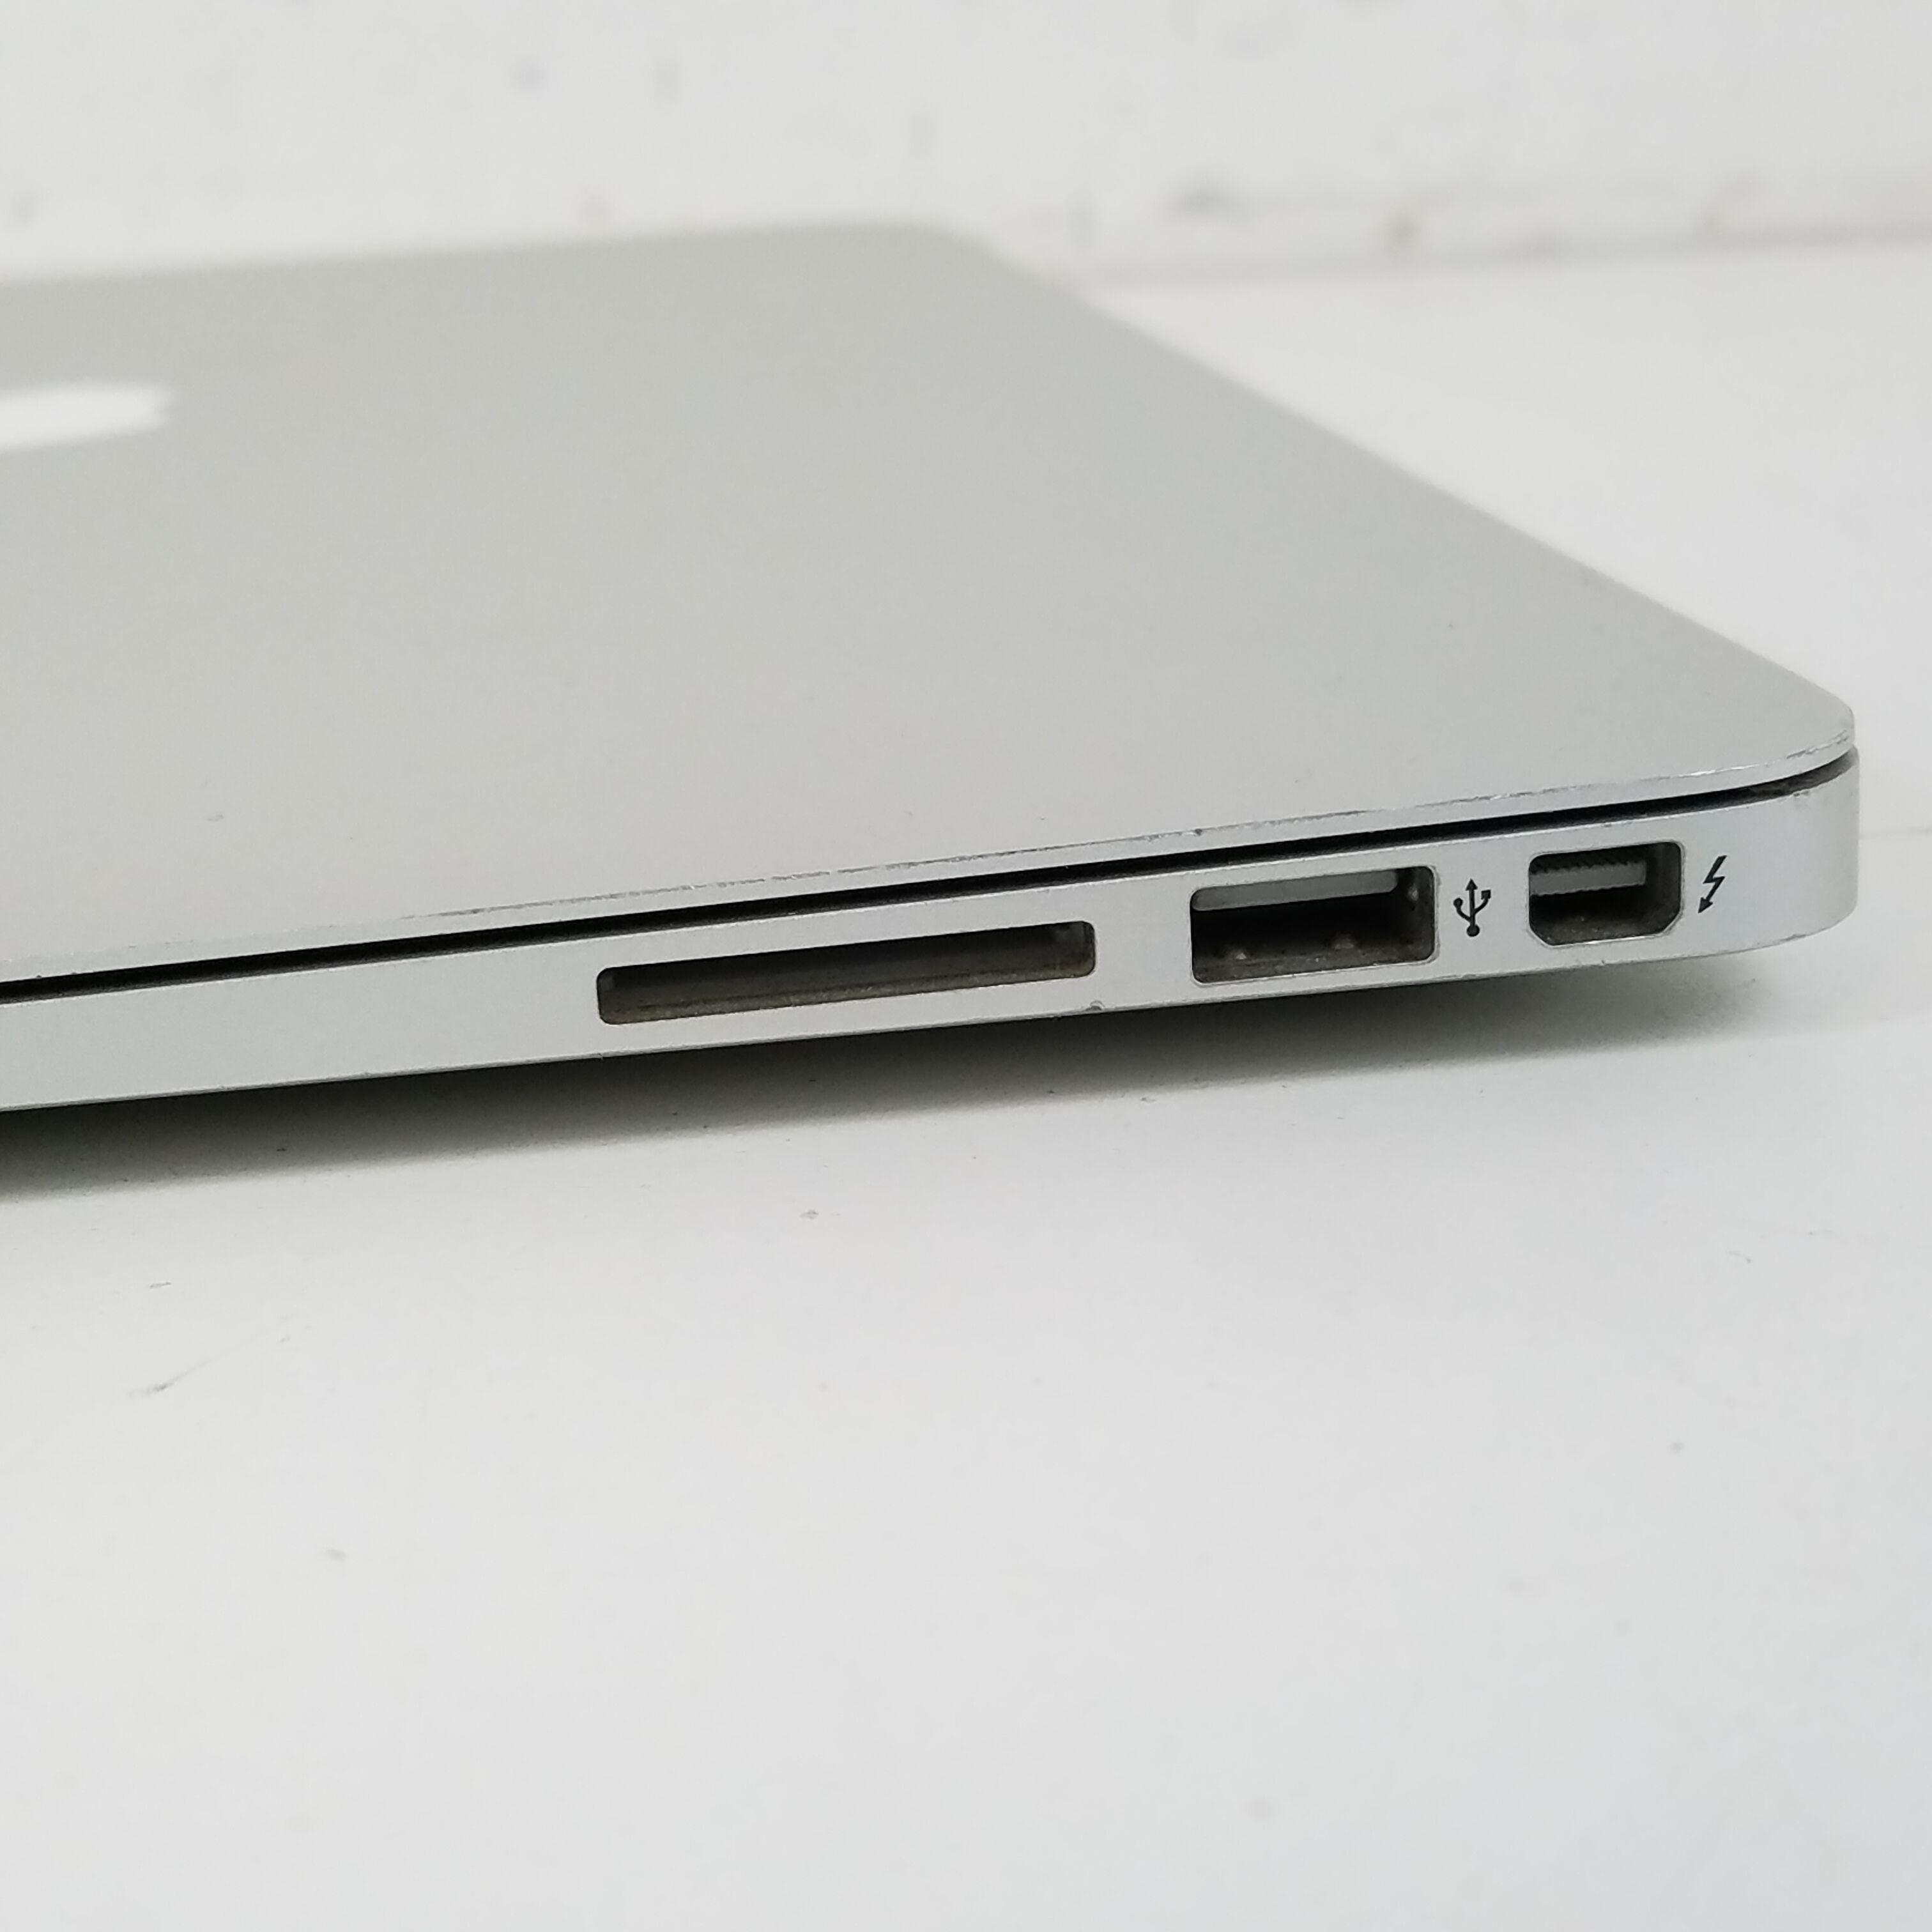 macbook air model a1369 year